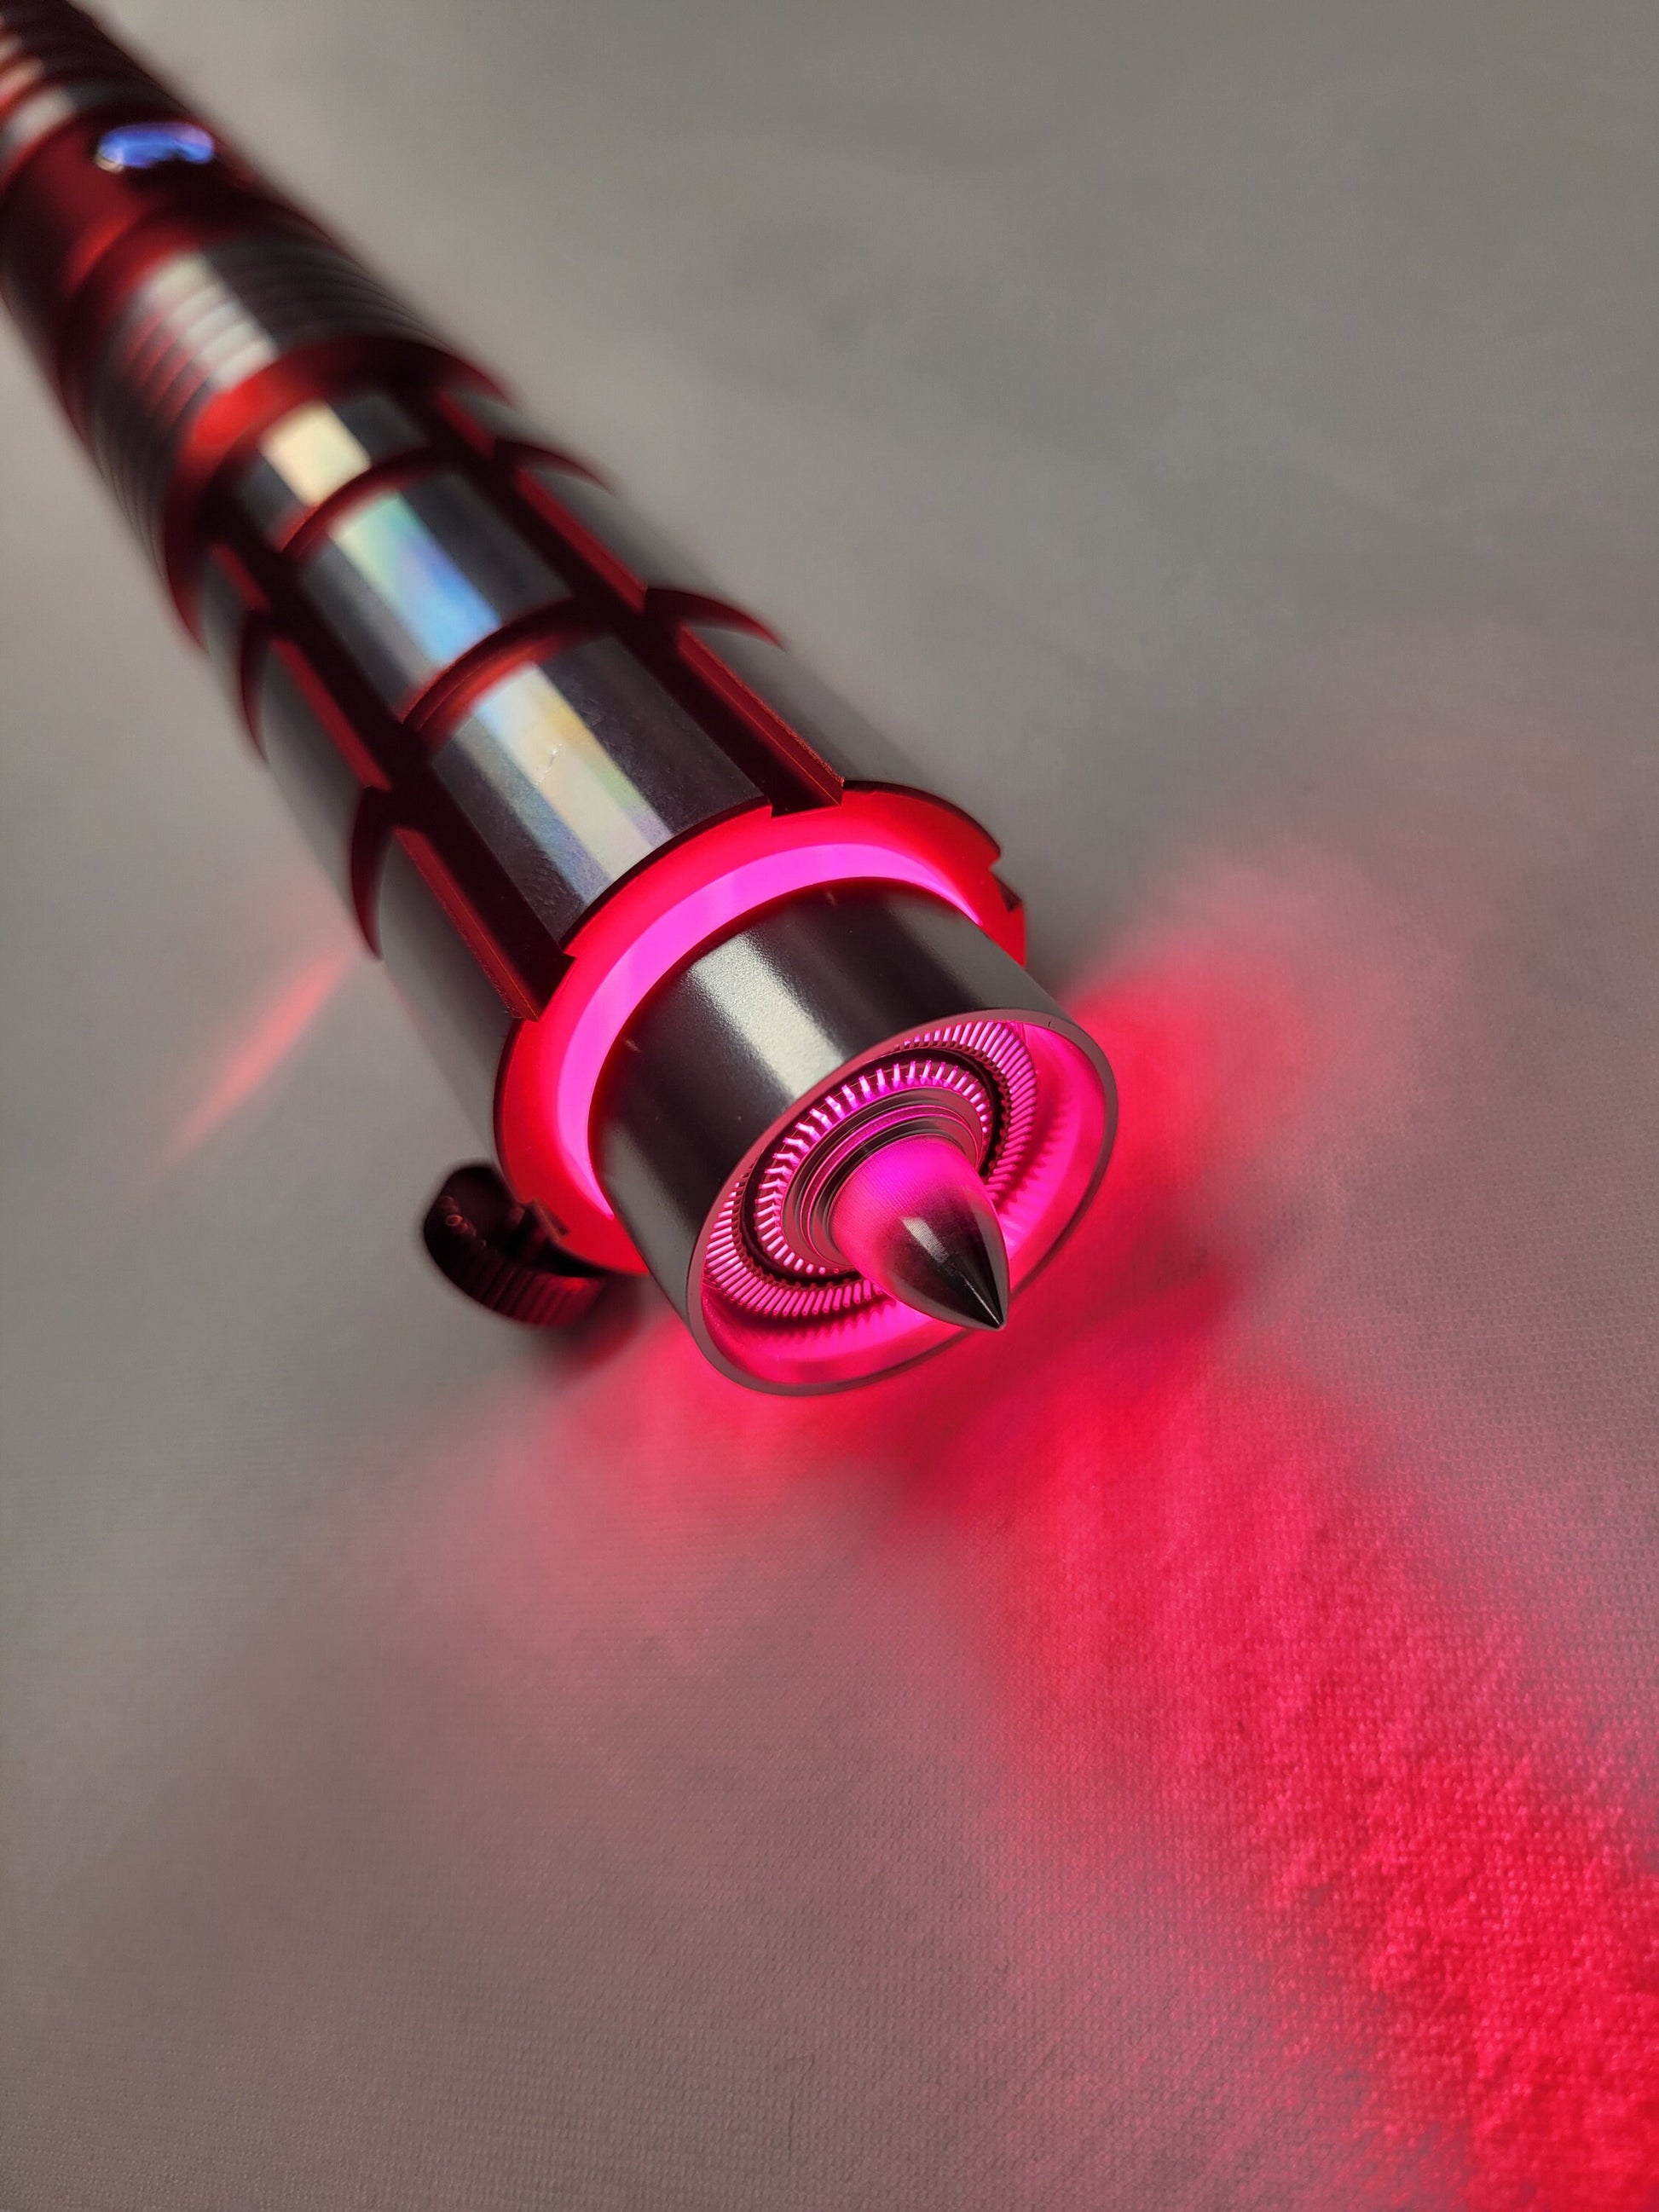 Lightsaber Blade Plug 1 Inch Silver Bullet Point Lightsaber Accessory Saber Blade Plug Extremely Durable Light Saber Star Wars Gift Bossaber